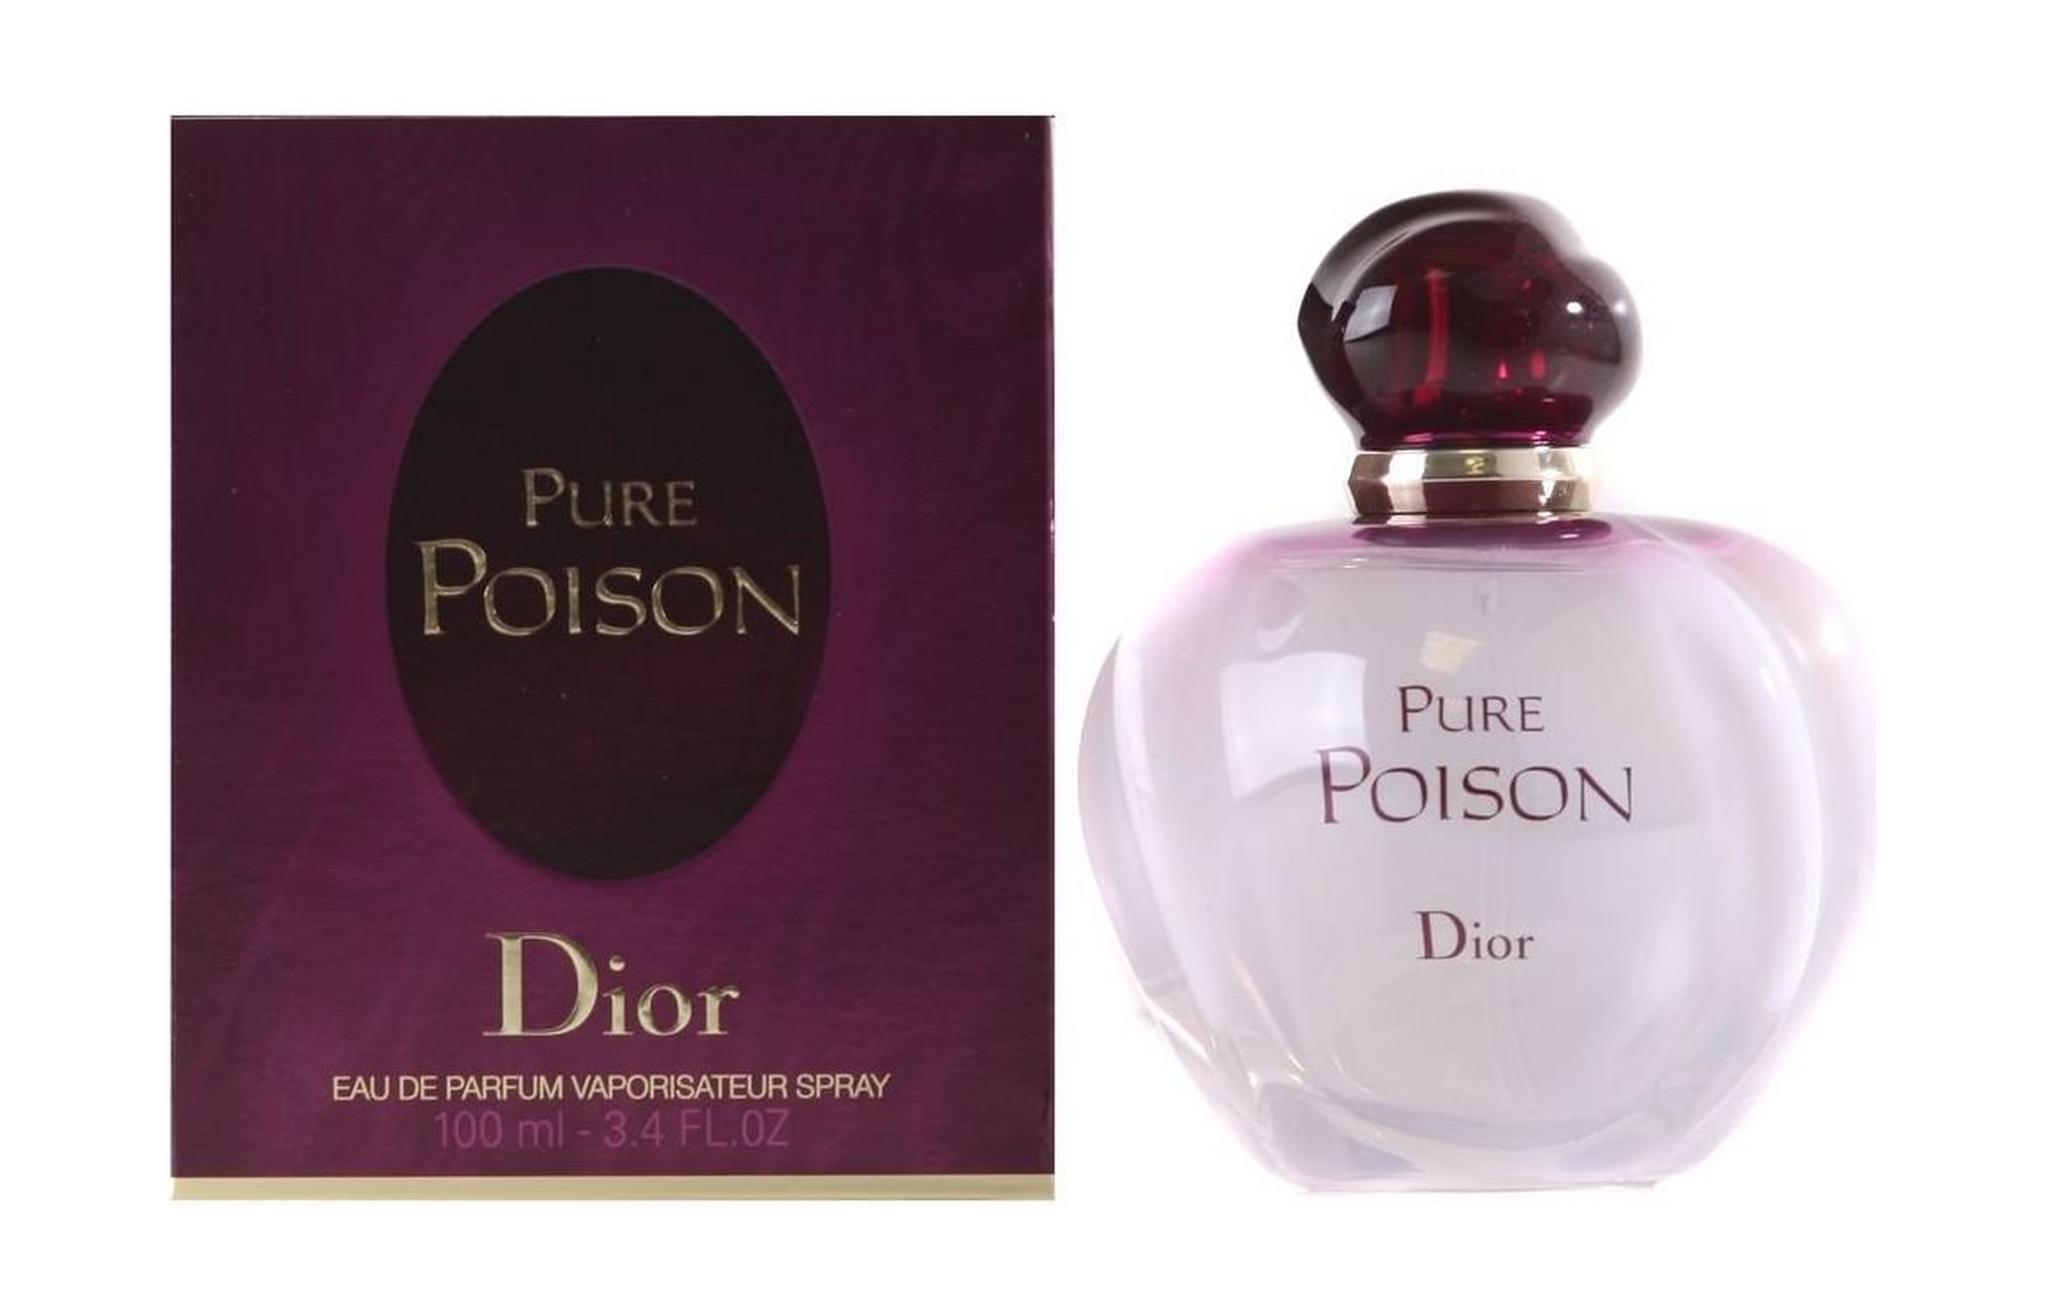 Pure Poison by Christian Dior for Women 100 mL Eau de Parfum